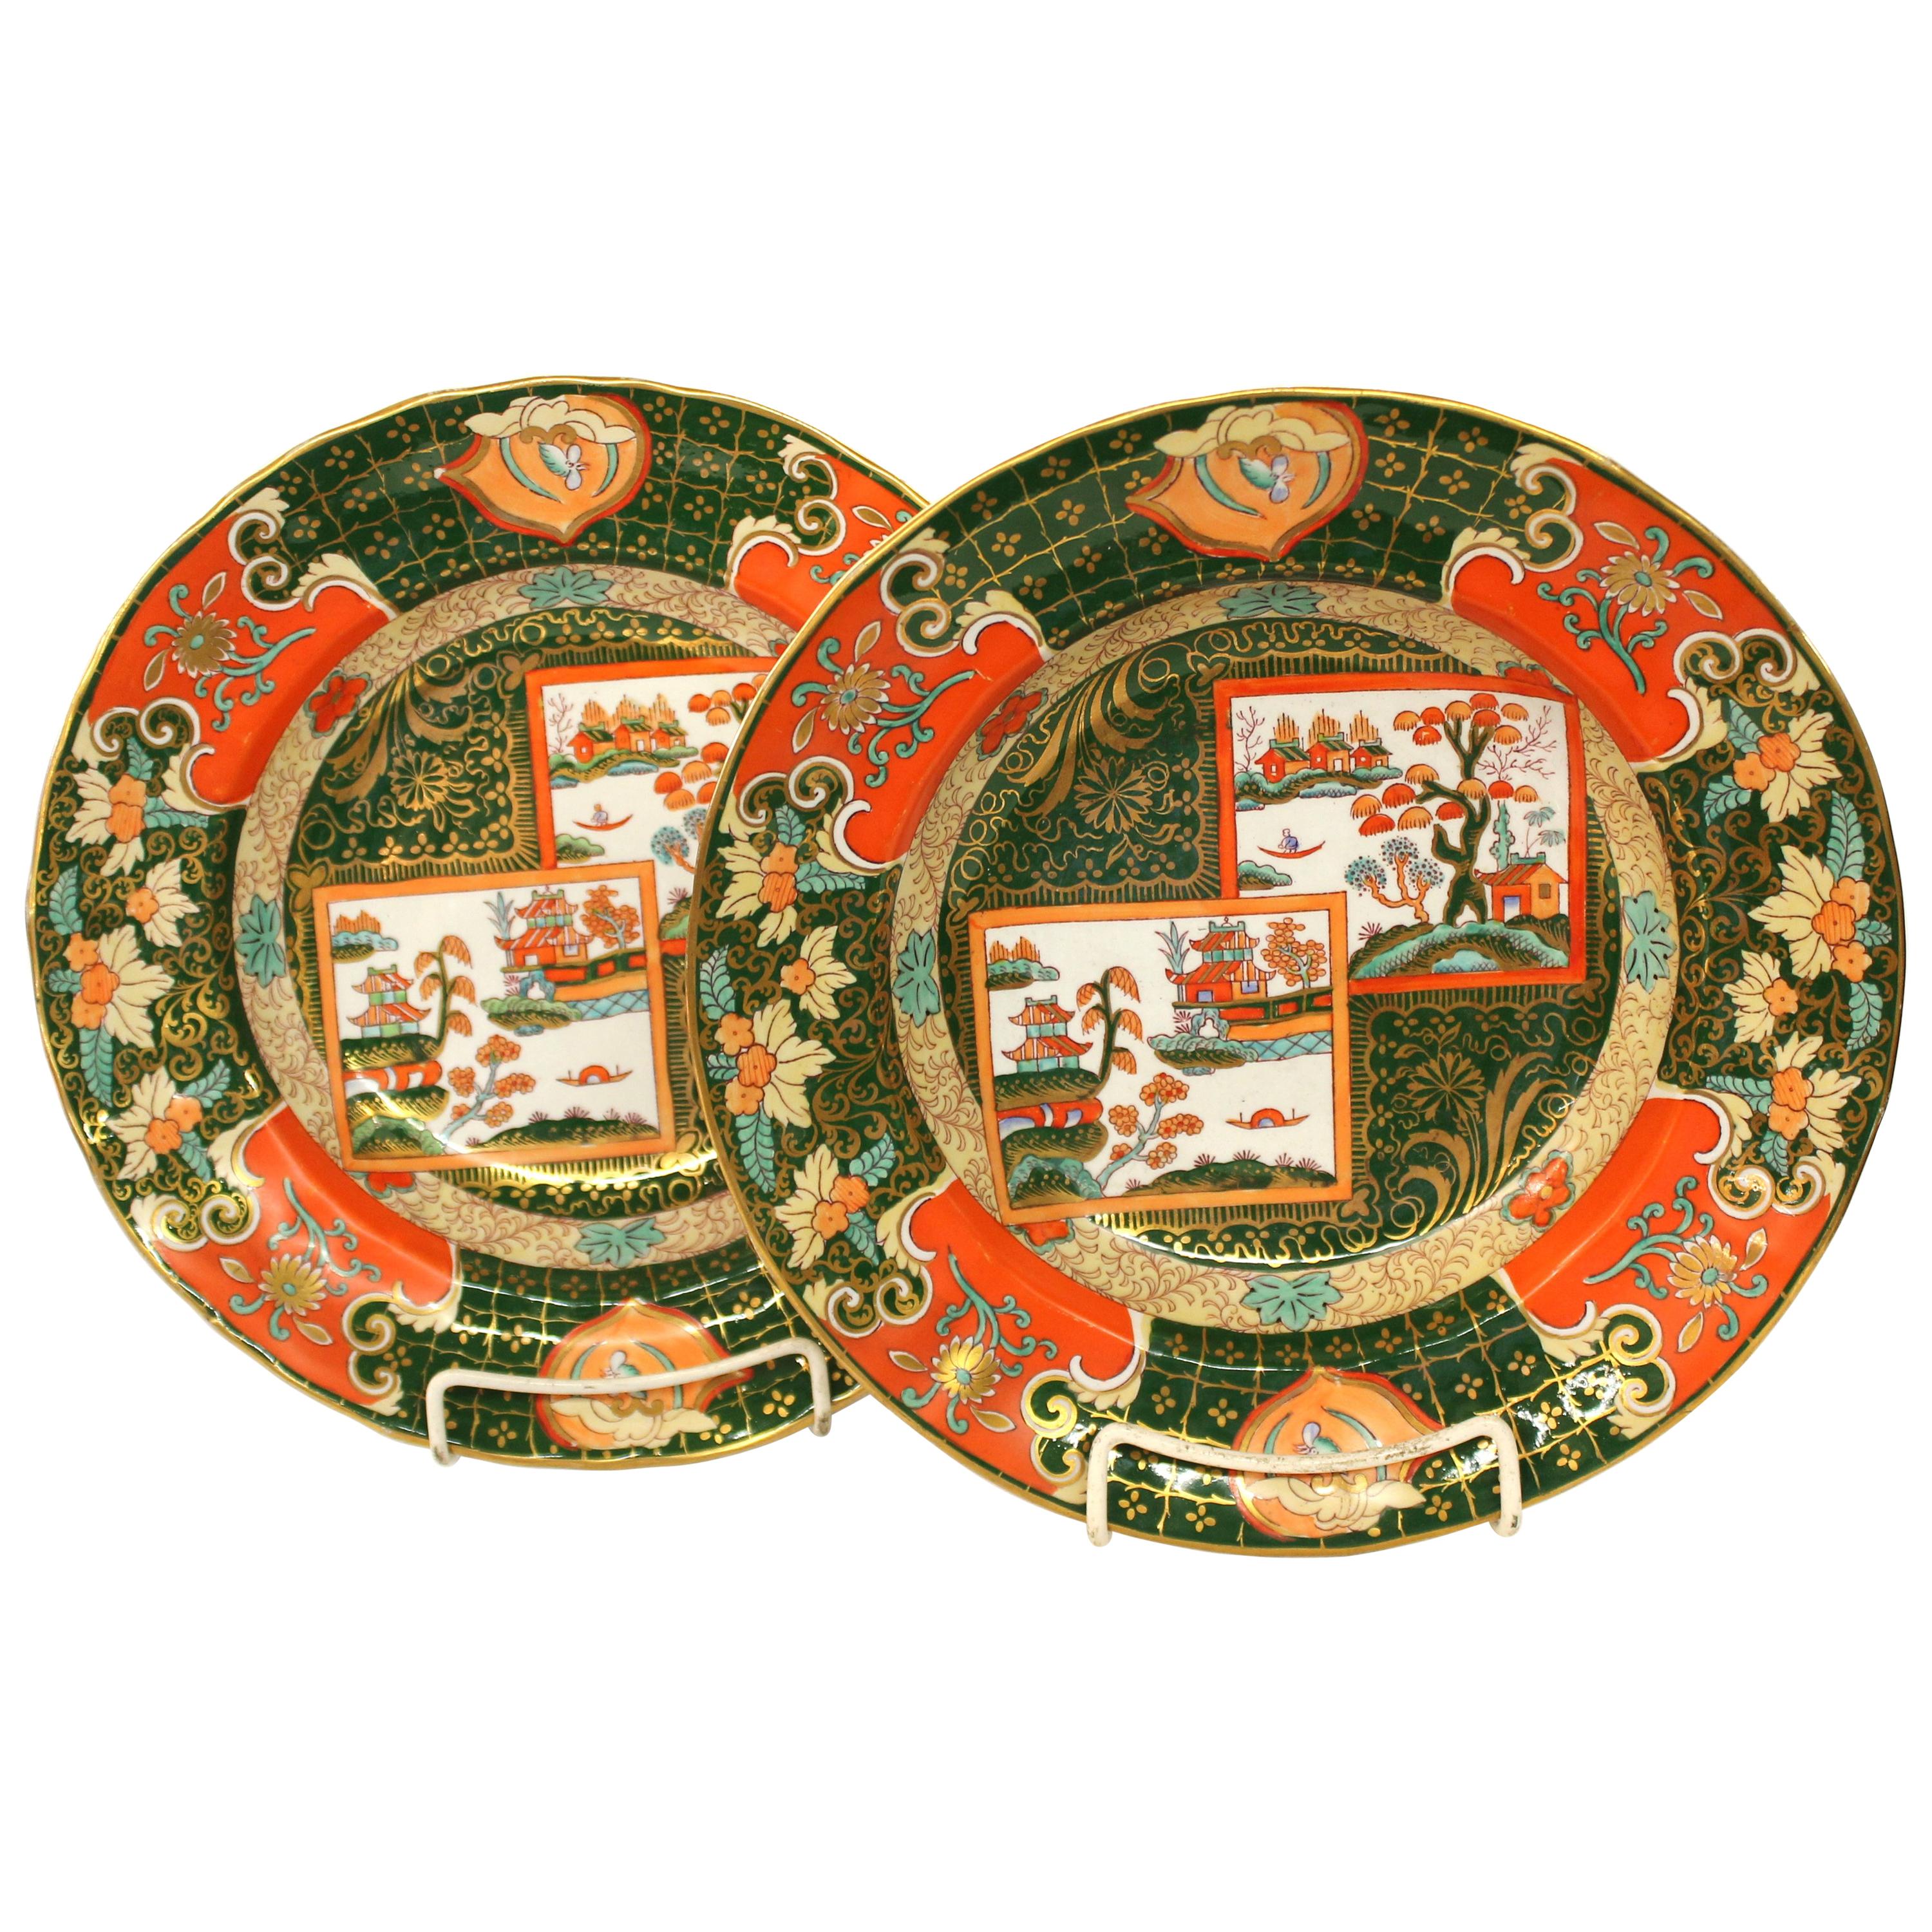 Pair of Antique English Ashworth's Ironstone "Double Landscape" Rim Soup Plates